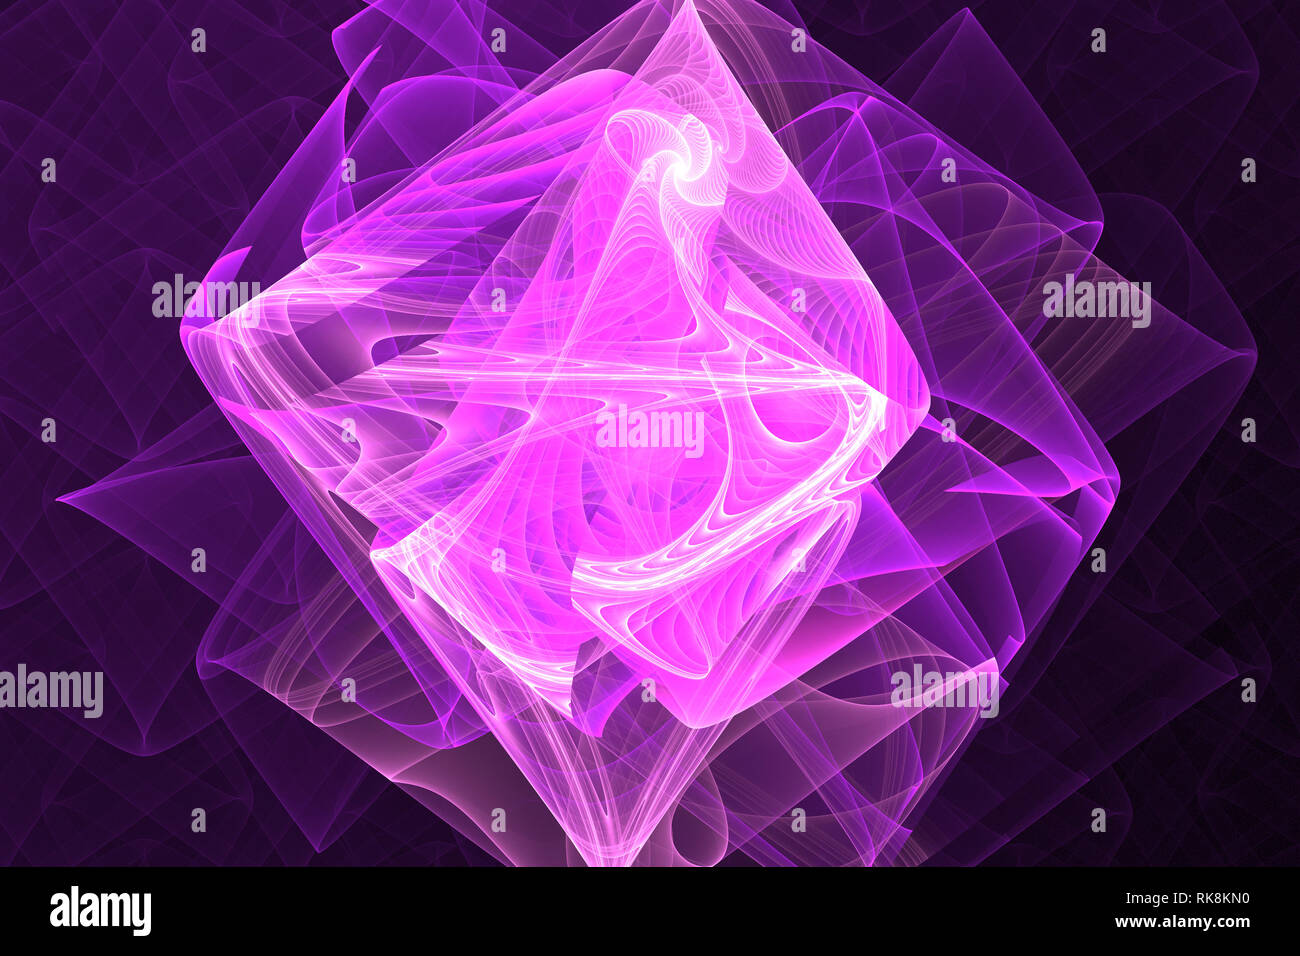 Animata frattale geometrico forma può illustrare fantasticando immaginazione spazio psichedelico sogni magic esplosione nucleare pattern di frequenza di radiazione Foto Stock